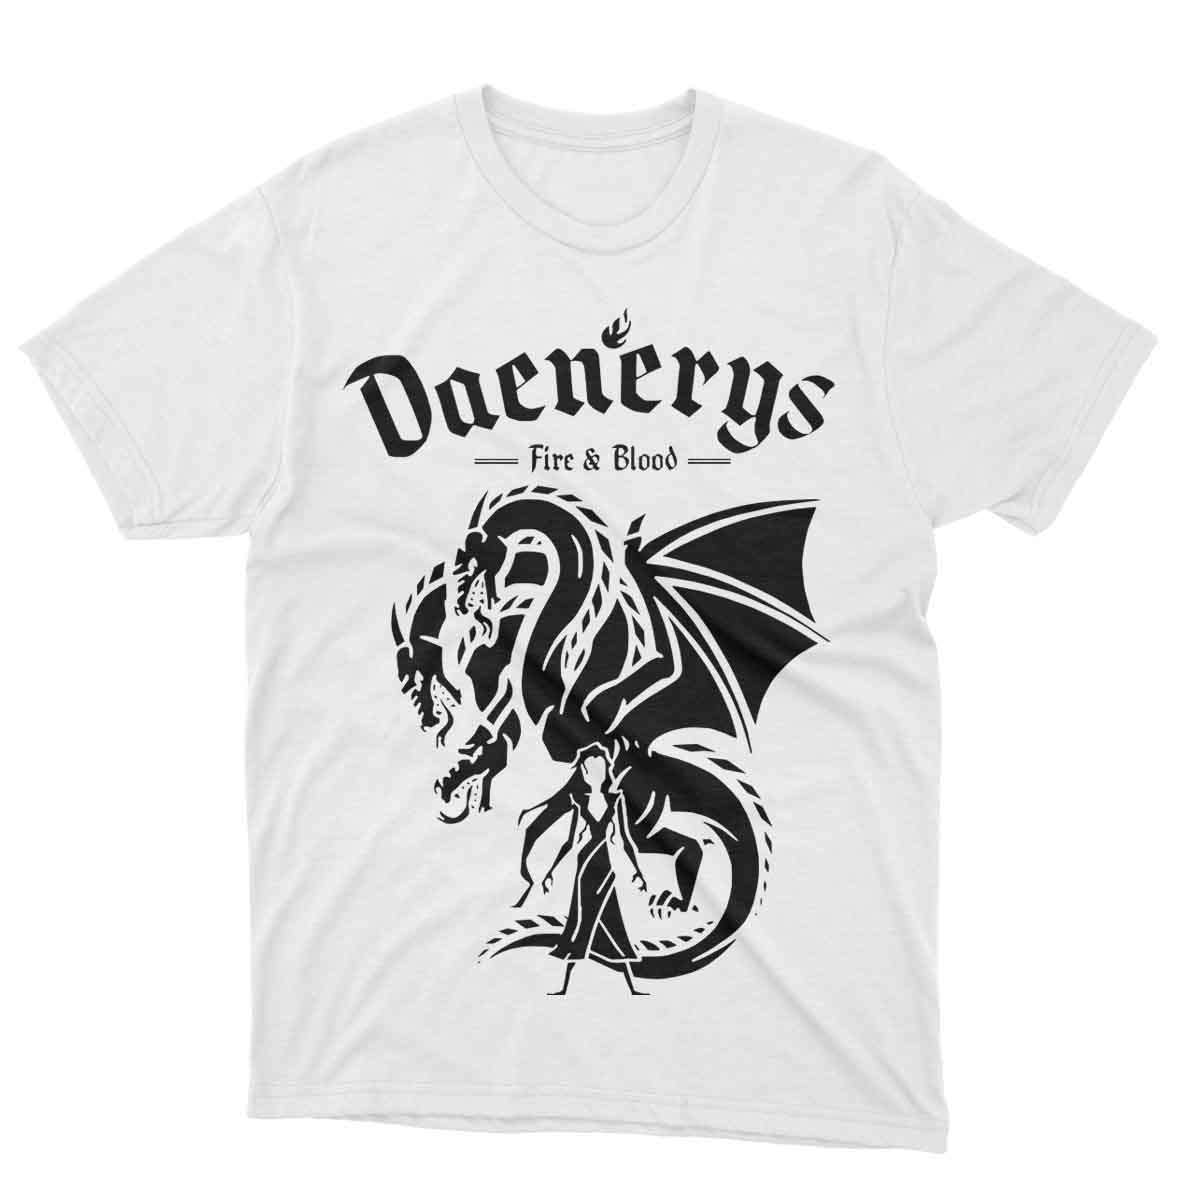 Daenerys Tshirt Black Design